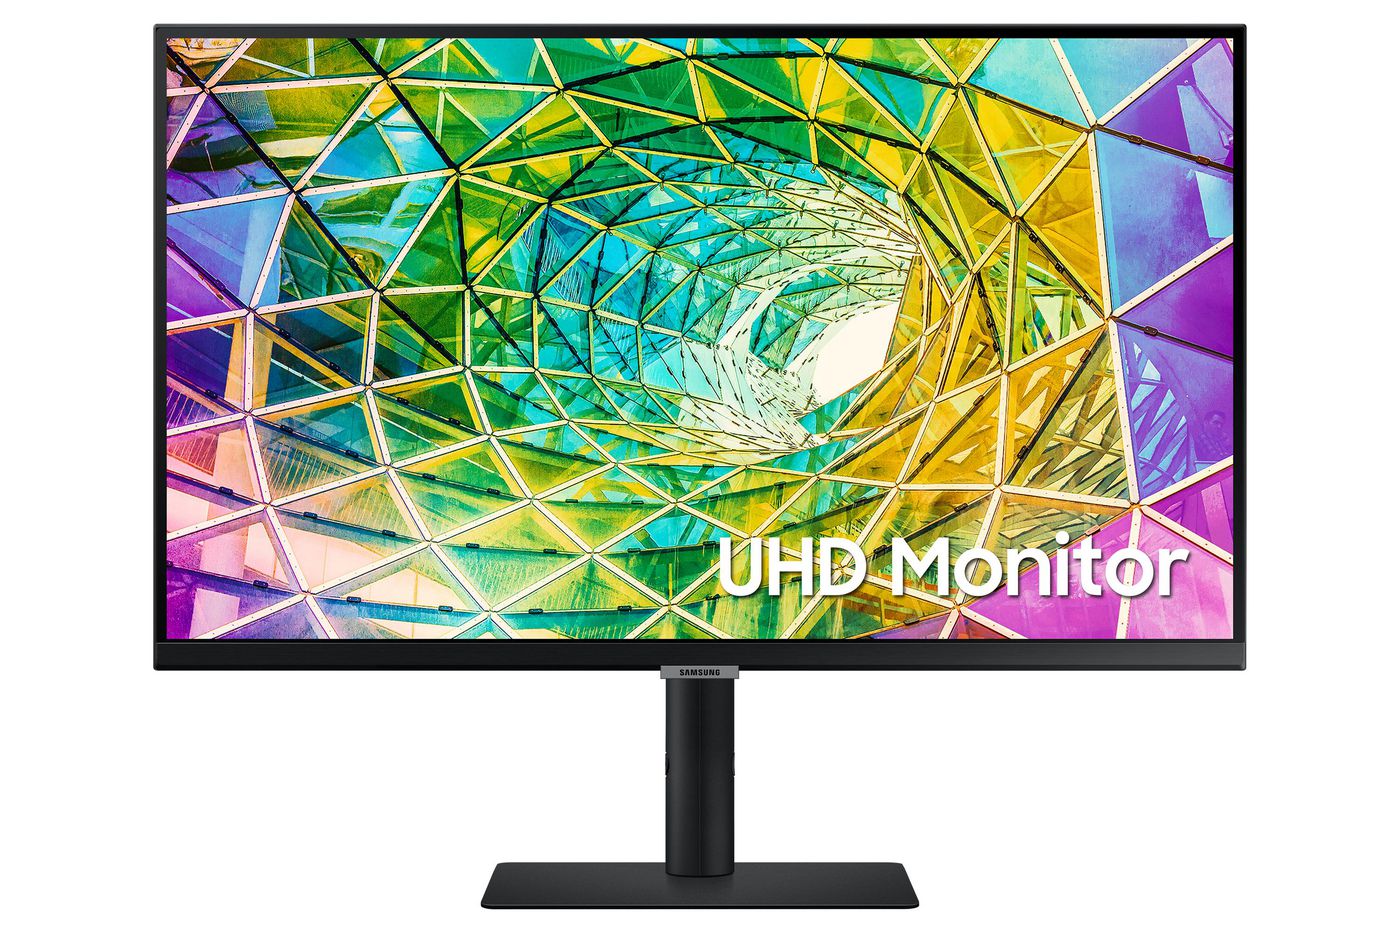 Desktop Monitor - S27a800nmu - 27in - 3840 X 2160